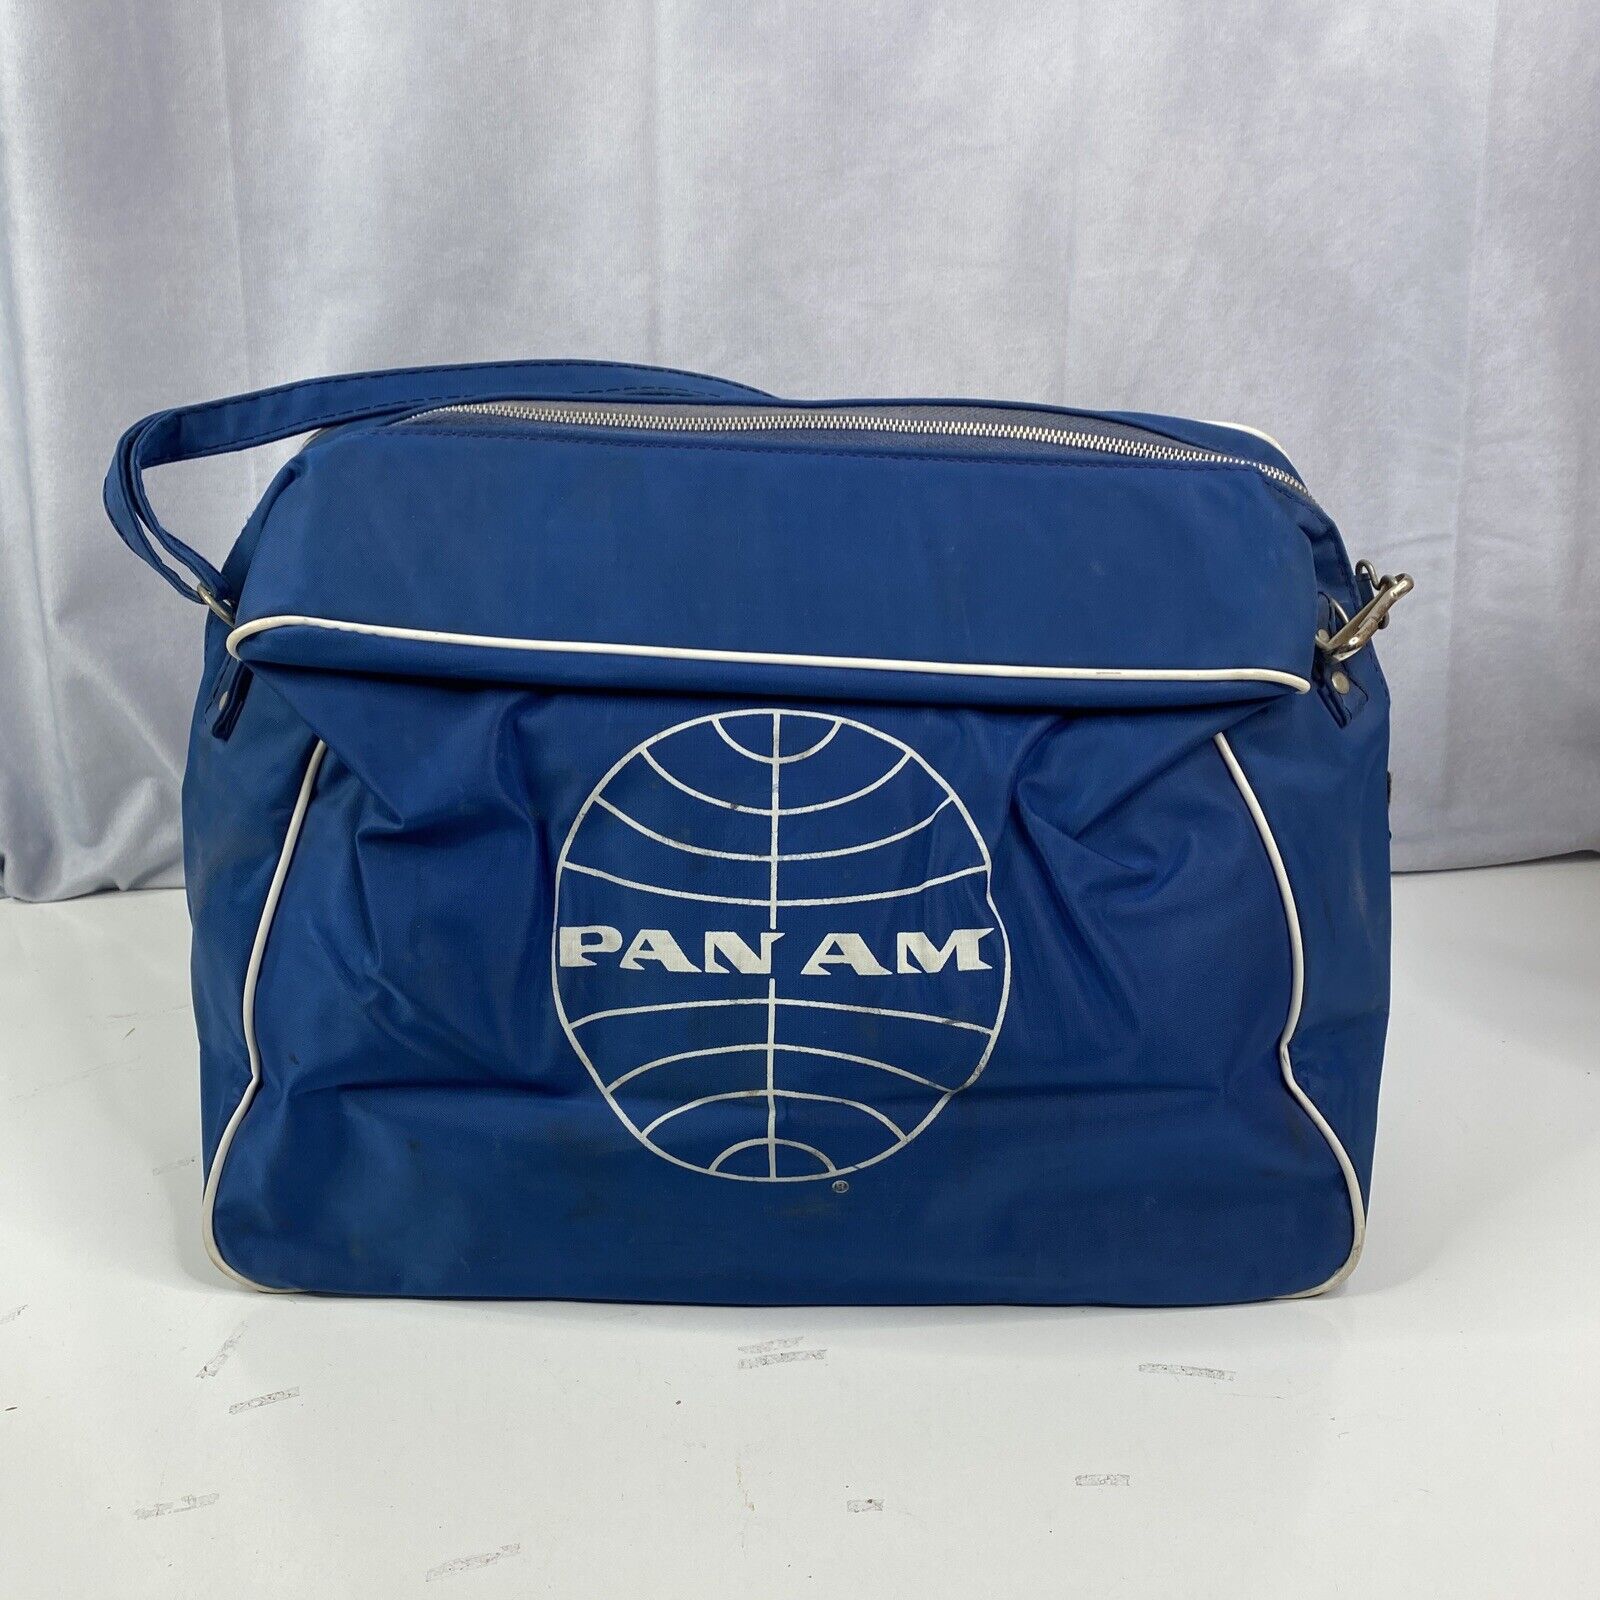 Pan Am Airlines Carry On Bag Shoulder StrapMade Vintage